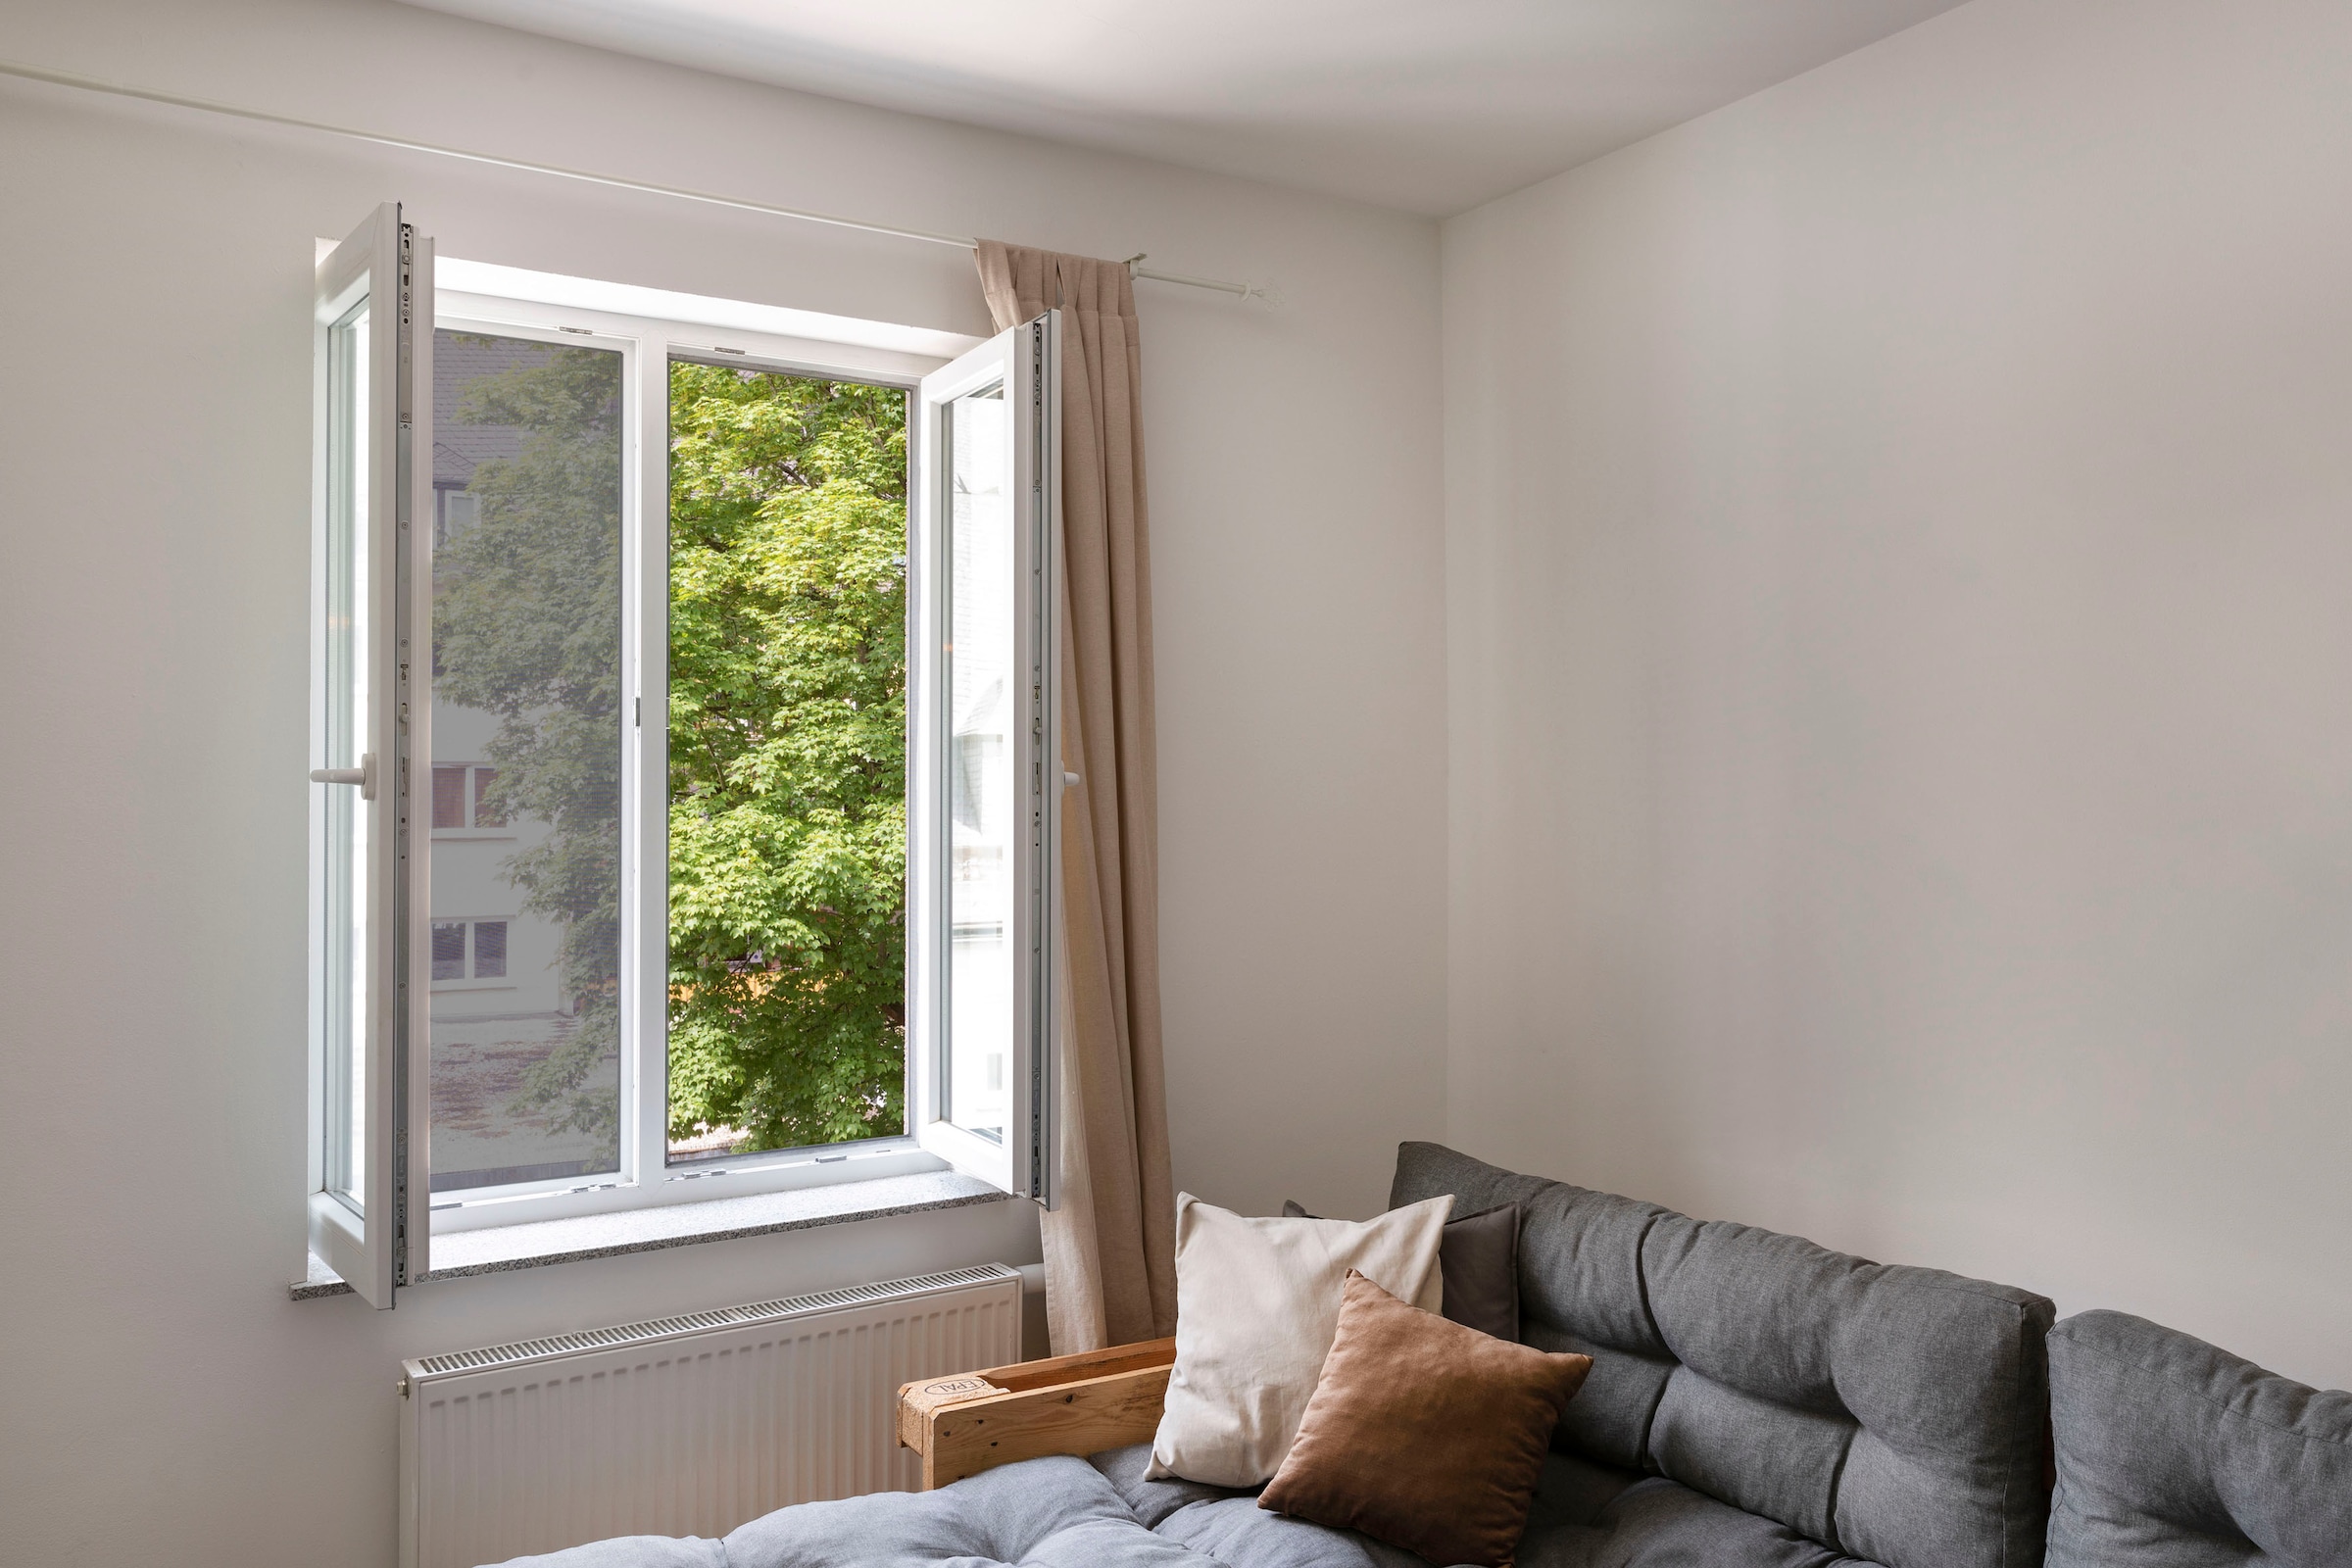 SCHELLENBERG Fliegengitter-Gewebe »50713«, mit Klettband, für Fenster, ohne bohren, 100x130 cm, anthrazit